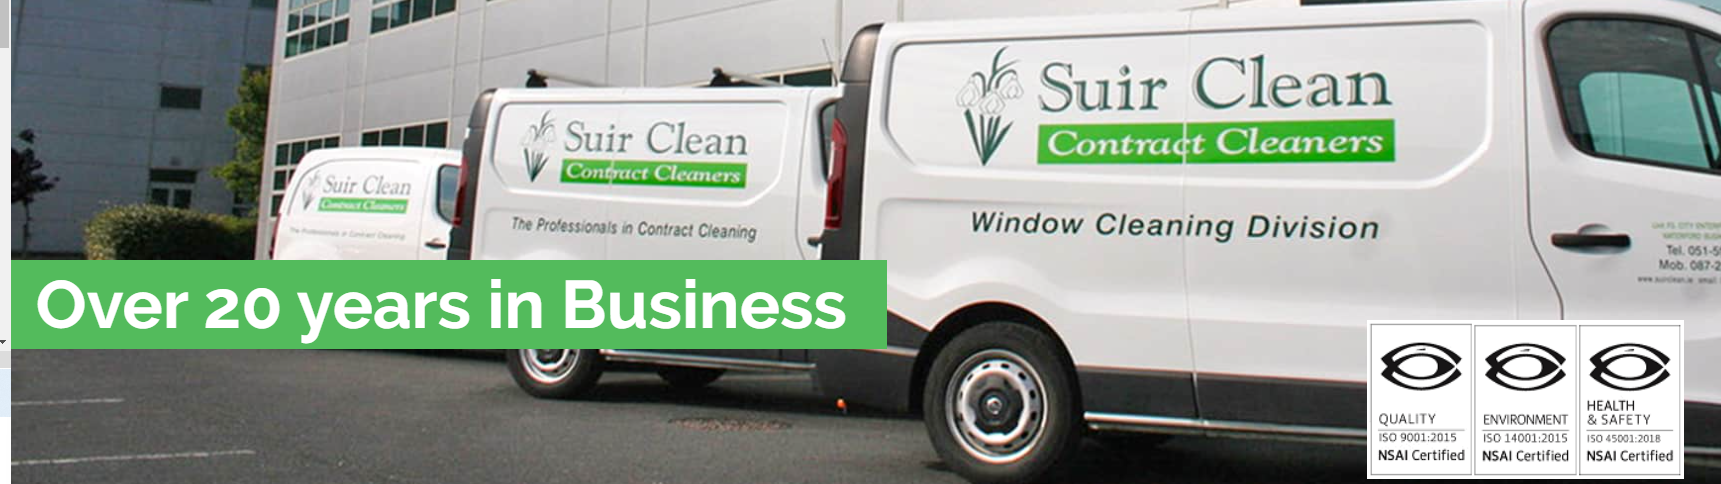 Suir Clean Ltd 3